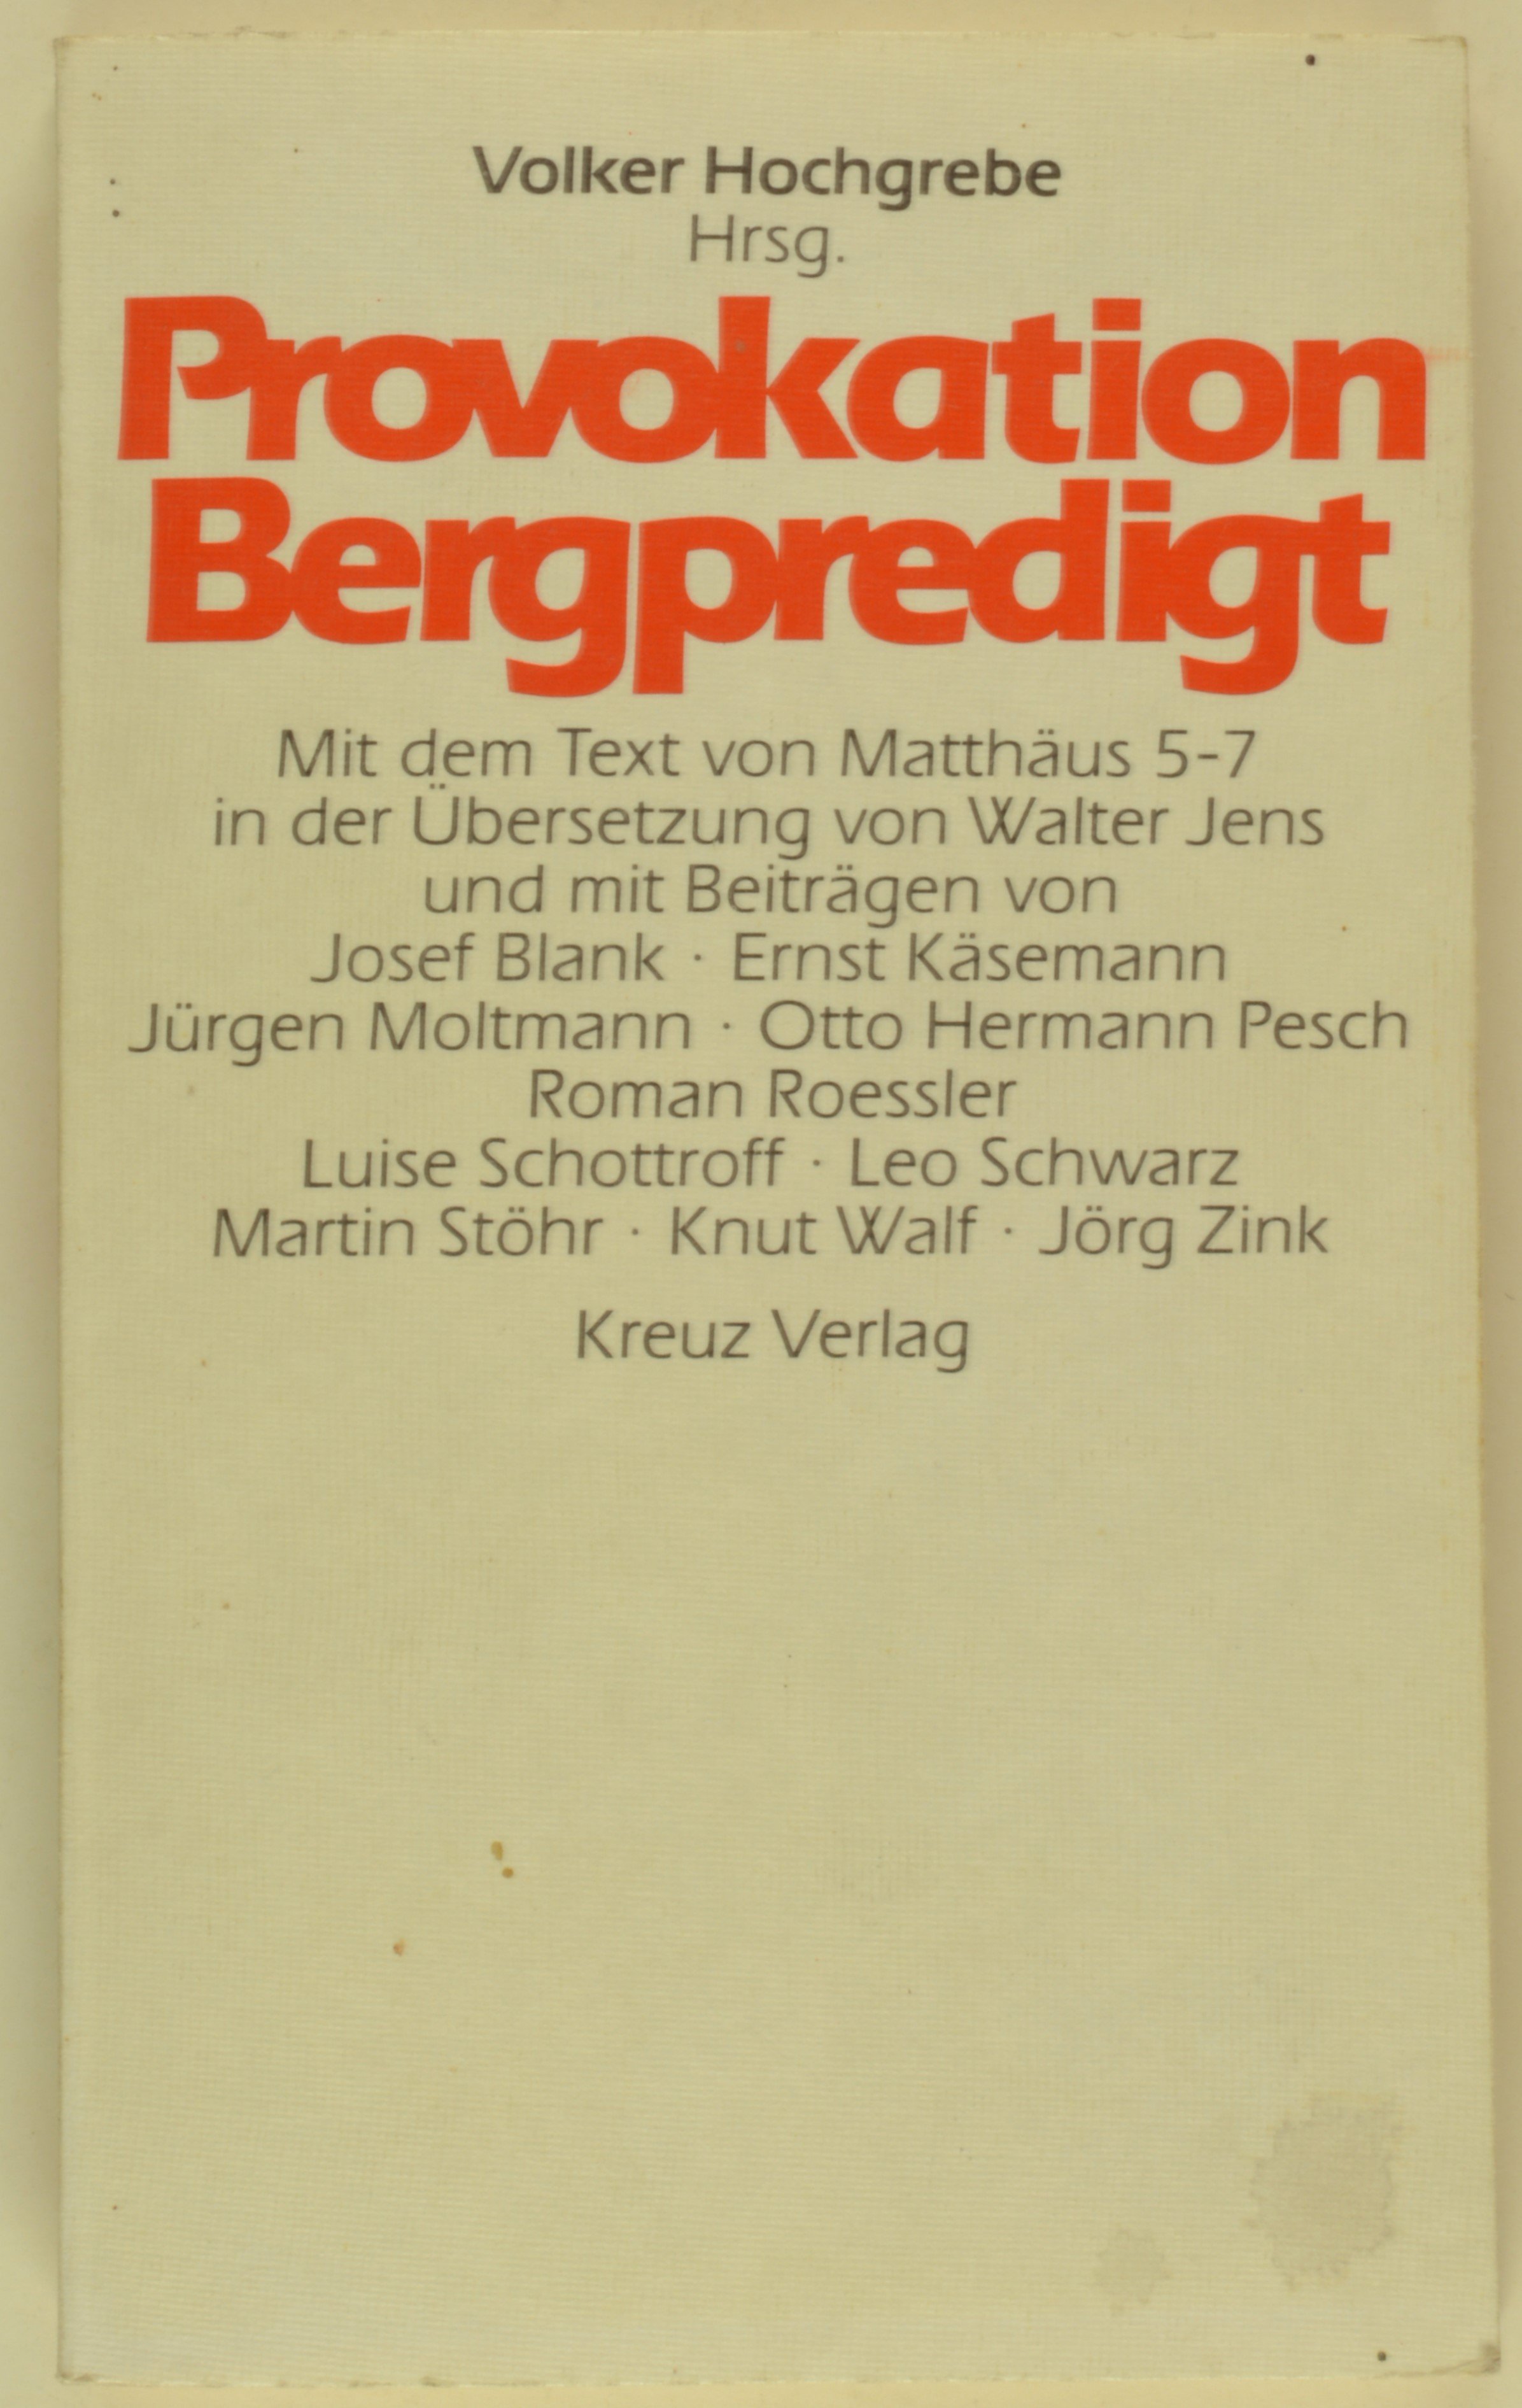 Buch: Provokation Bergpredigt, hg. v. Volker Hochgrebe, Freiburg 1982 (DDR Geschichtsmuseum im Dokumentationszentrum Perleberg CC BY-SA)